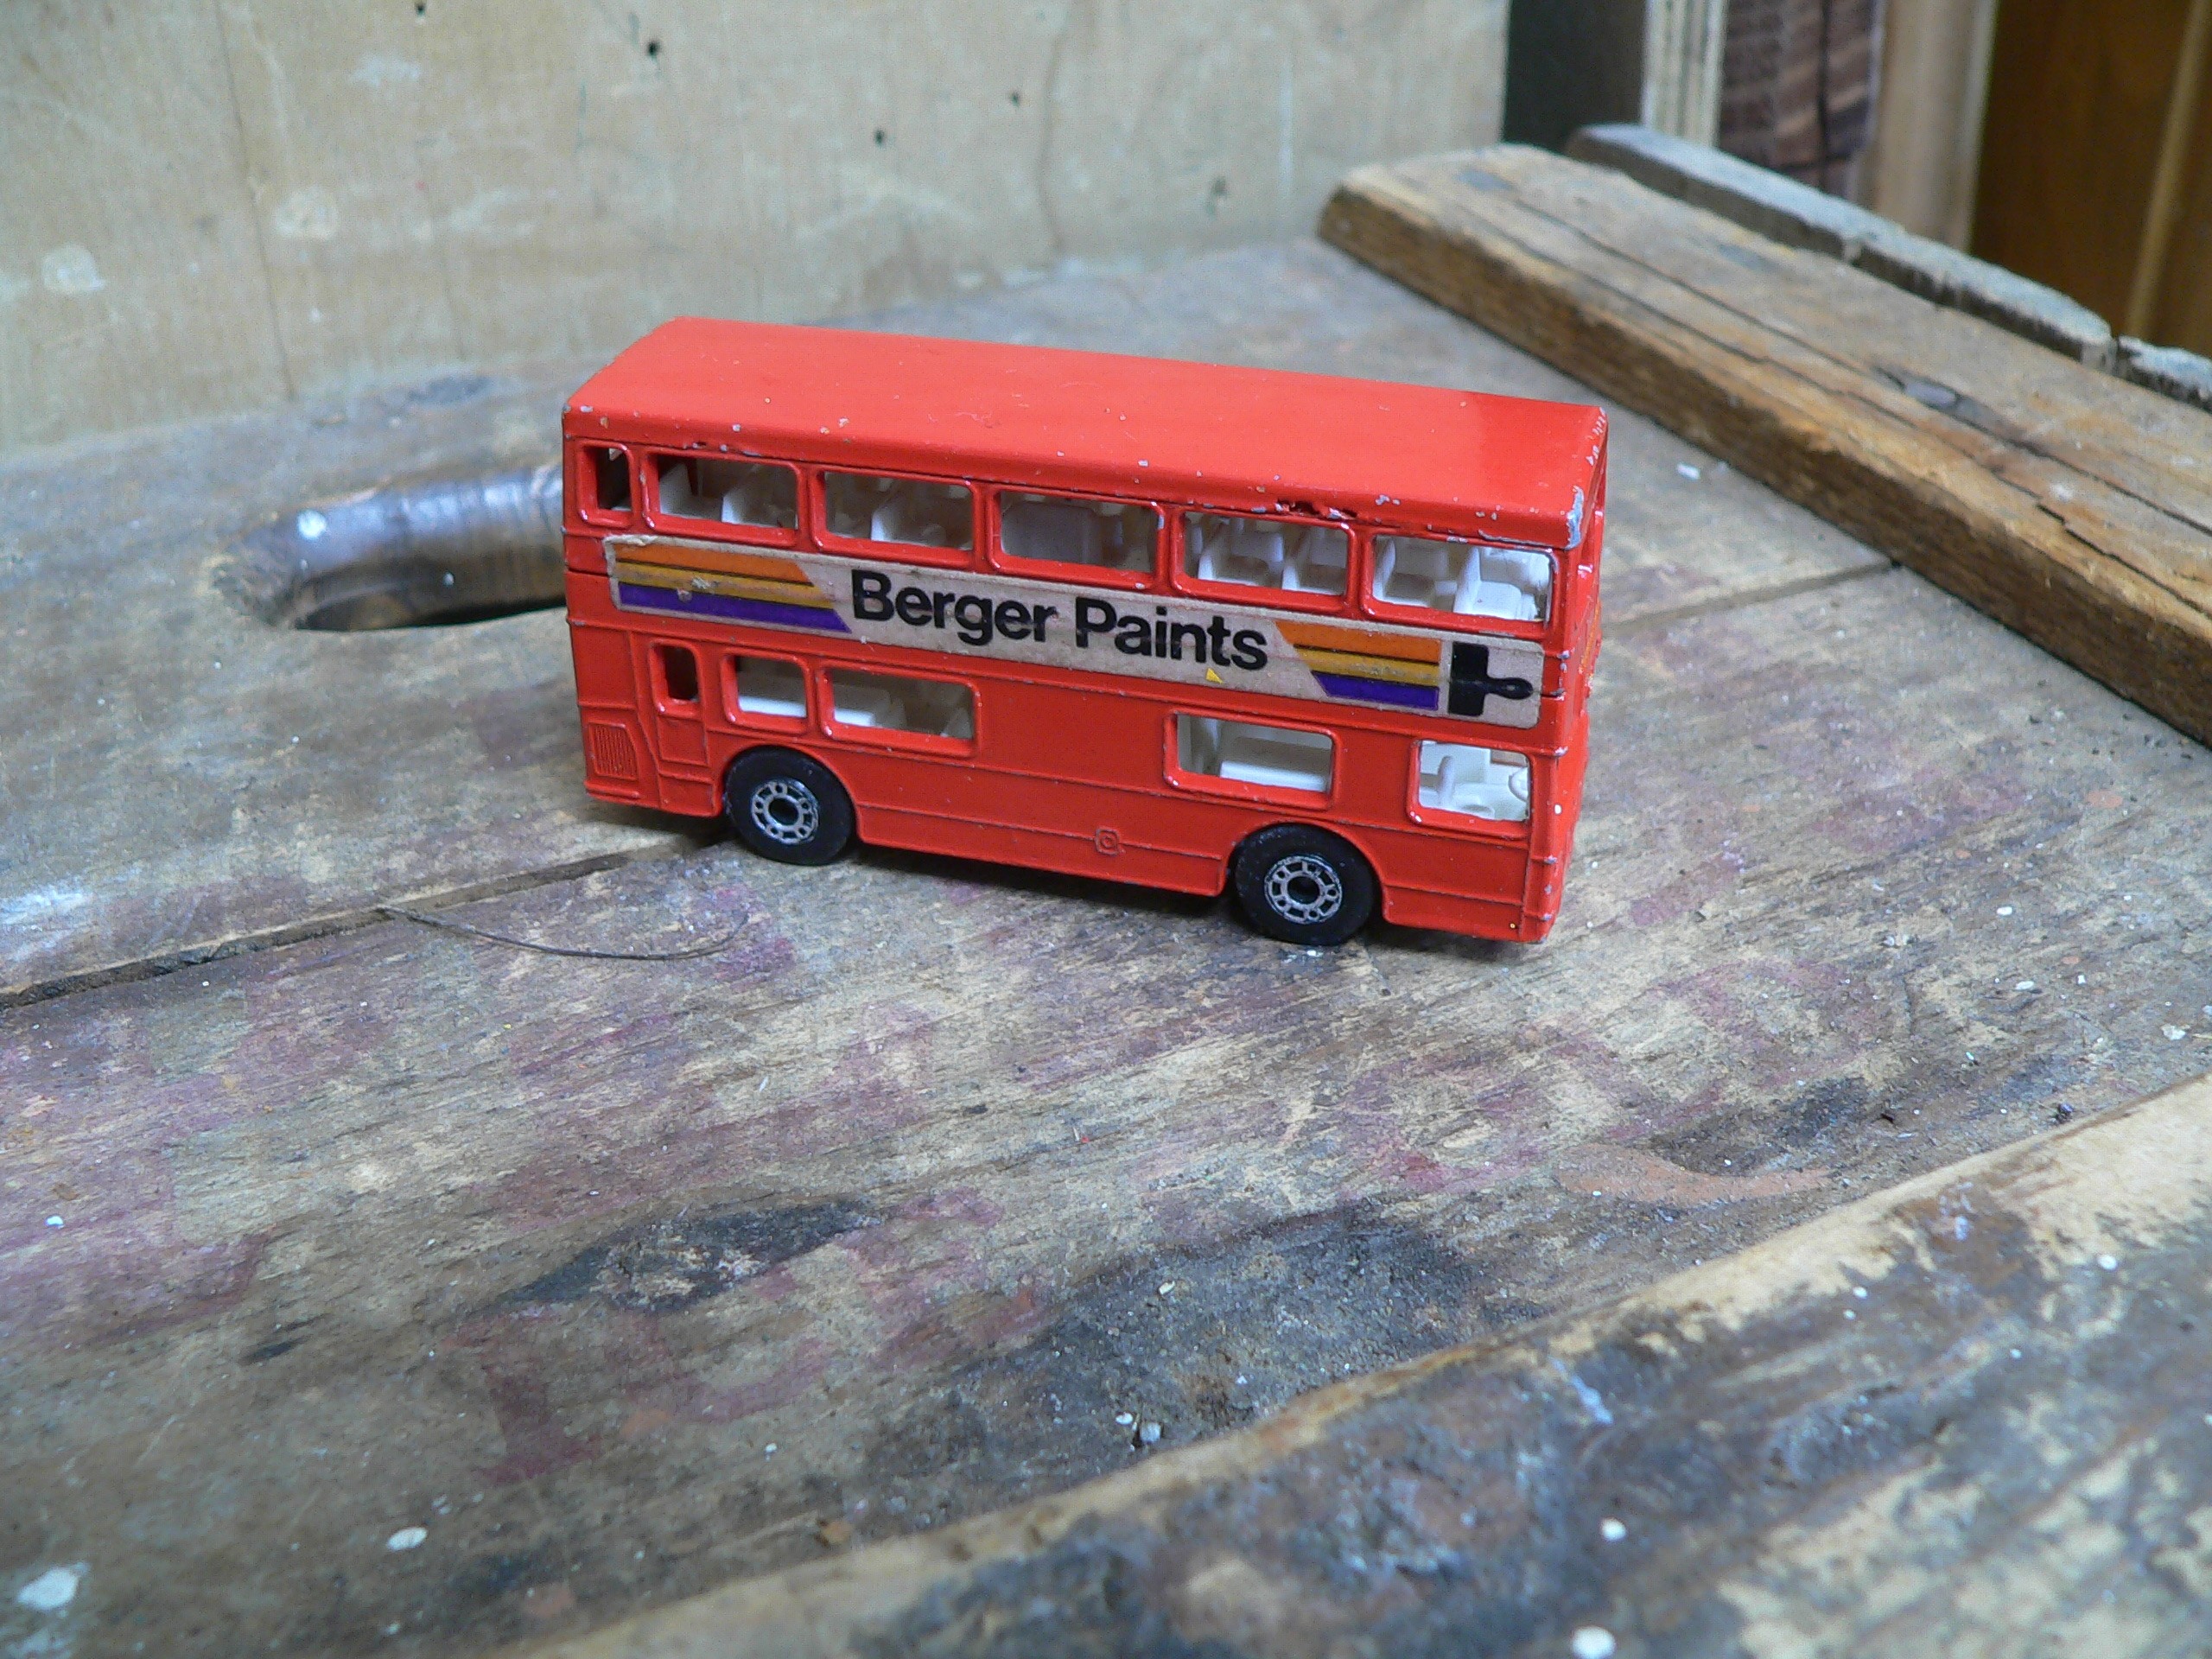 The londoner berger paints # 6525.10